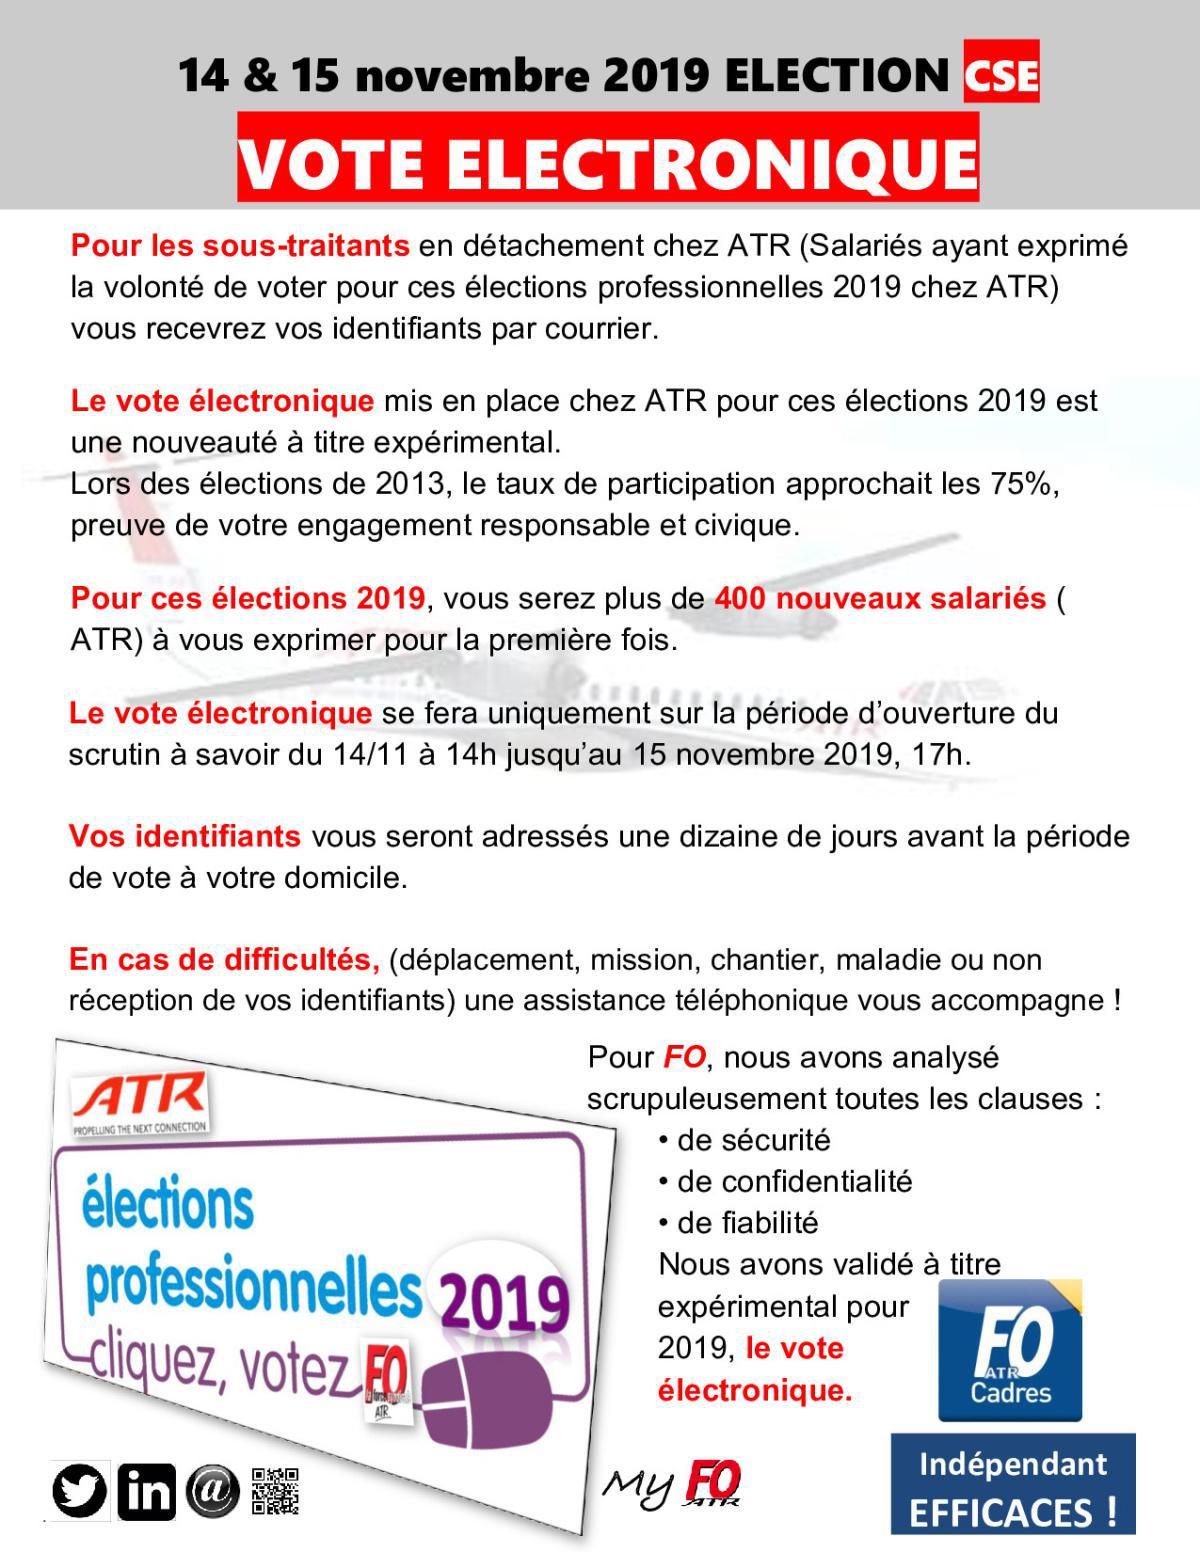 CSE ATR : VOTE ELECTRONIQUE